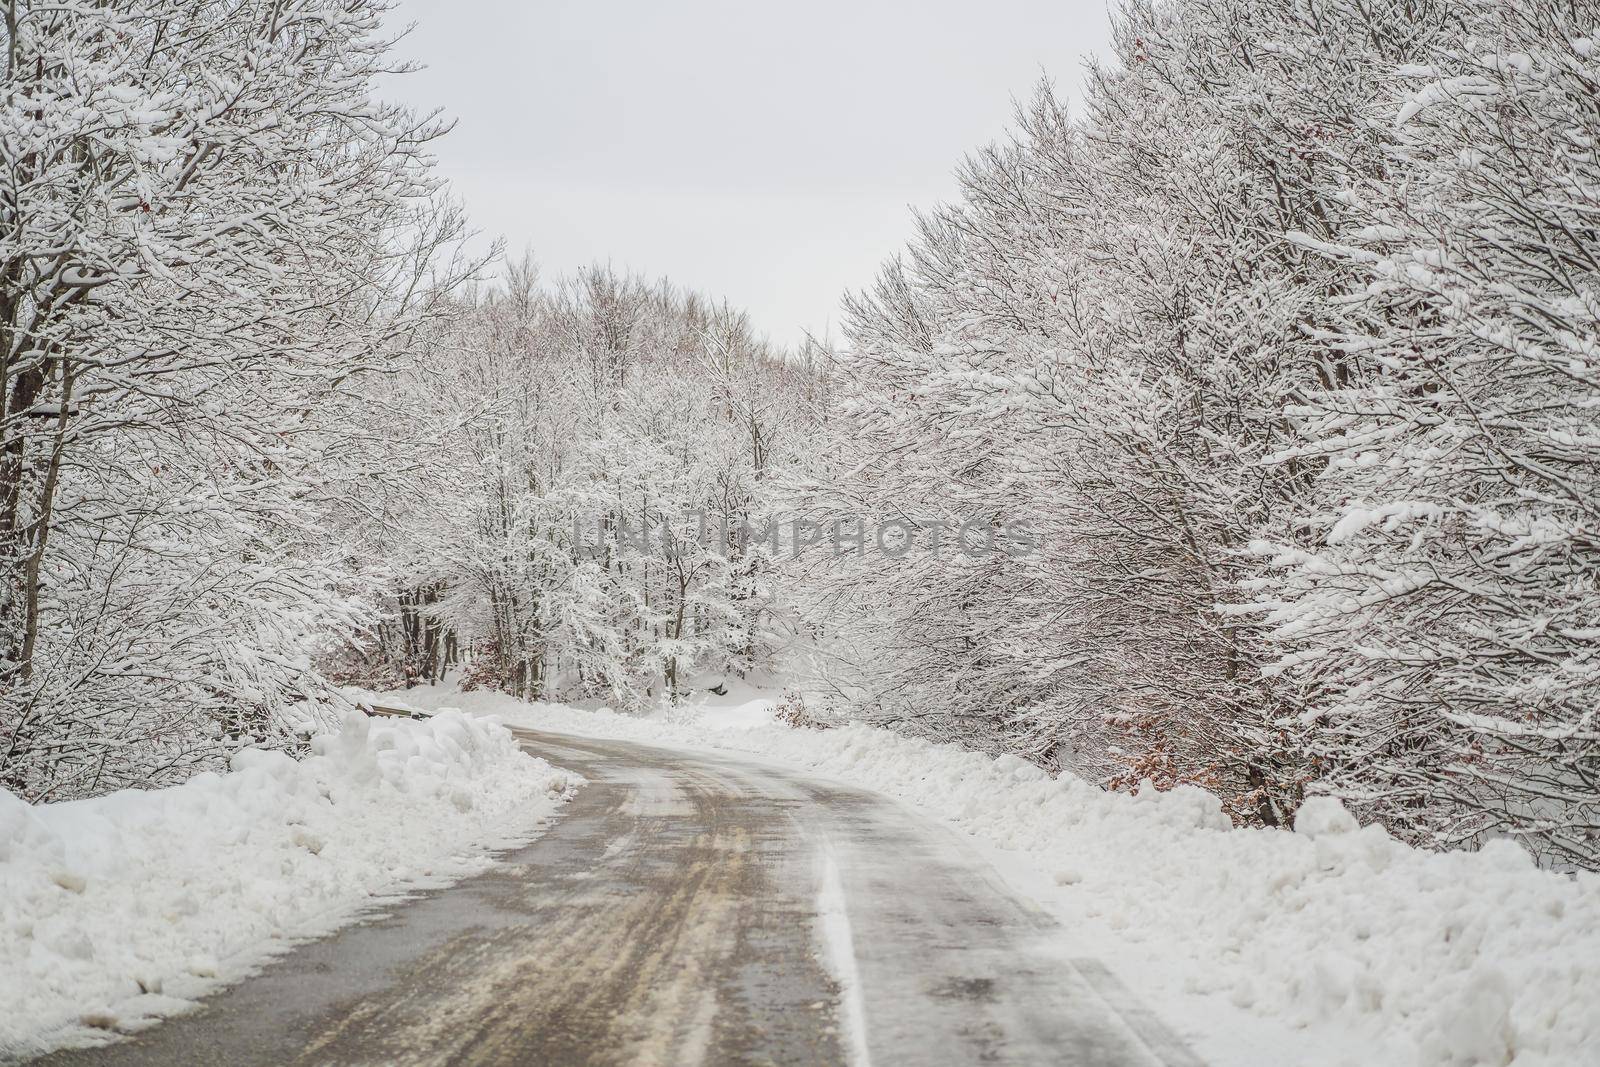 Winter road in the snow. Winter road trip by galitskaya